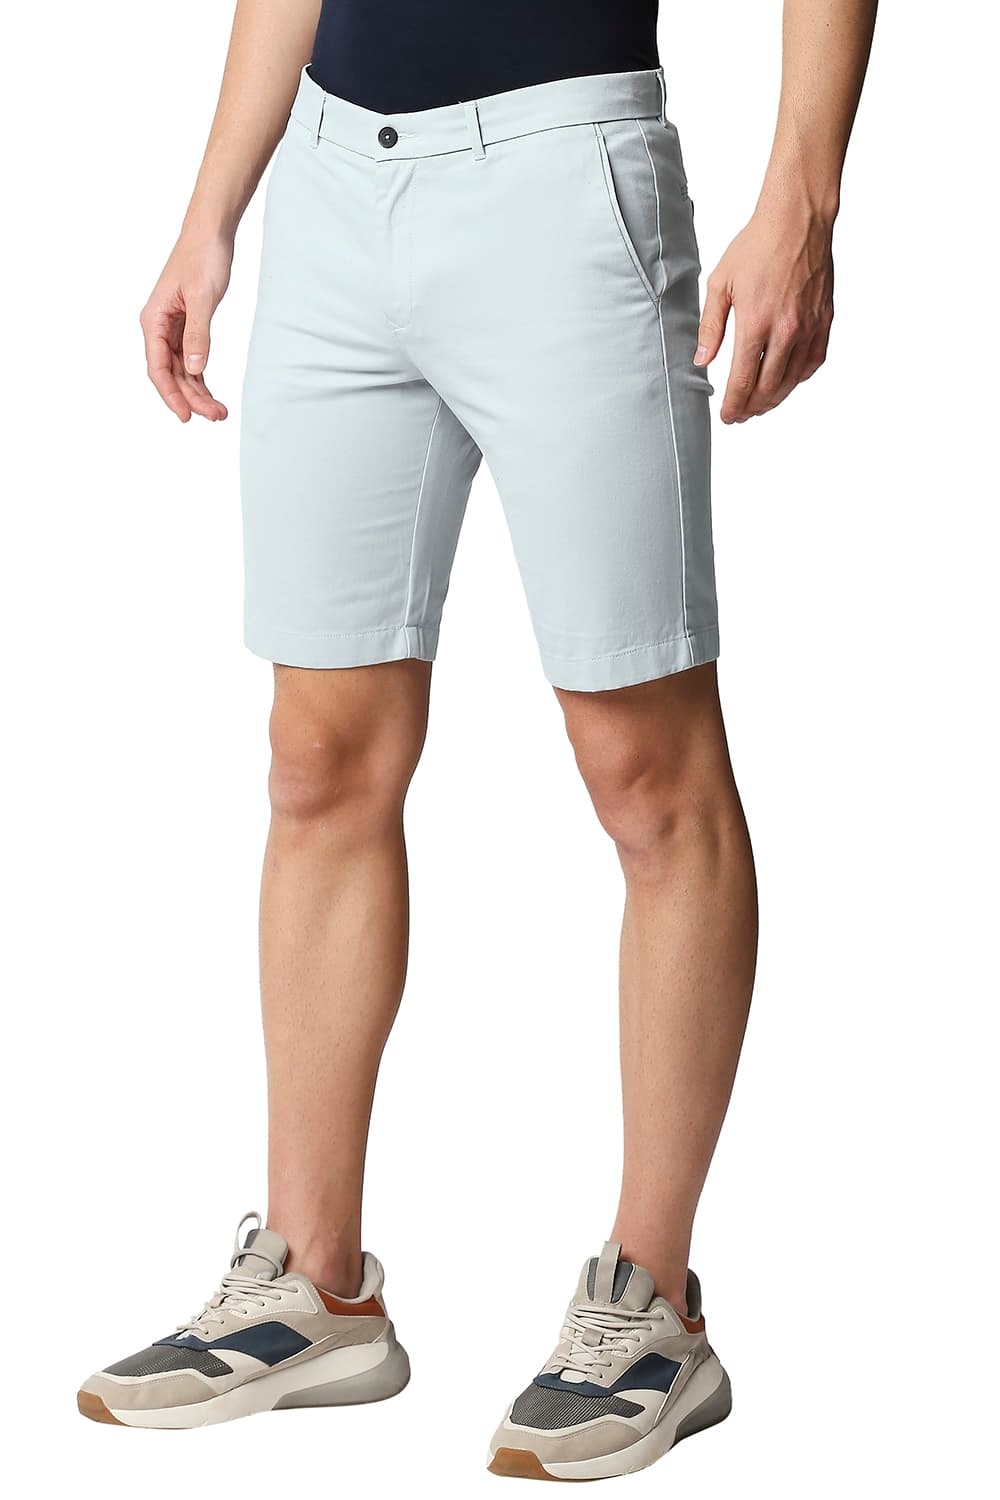 Men's Light Blue Cotton Solid Shorts